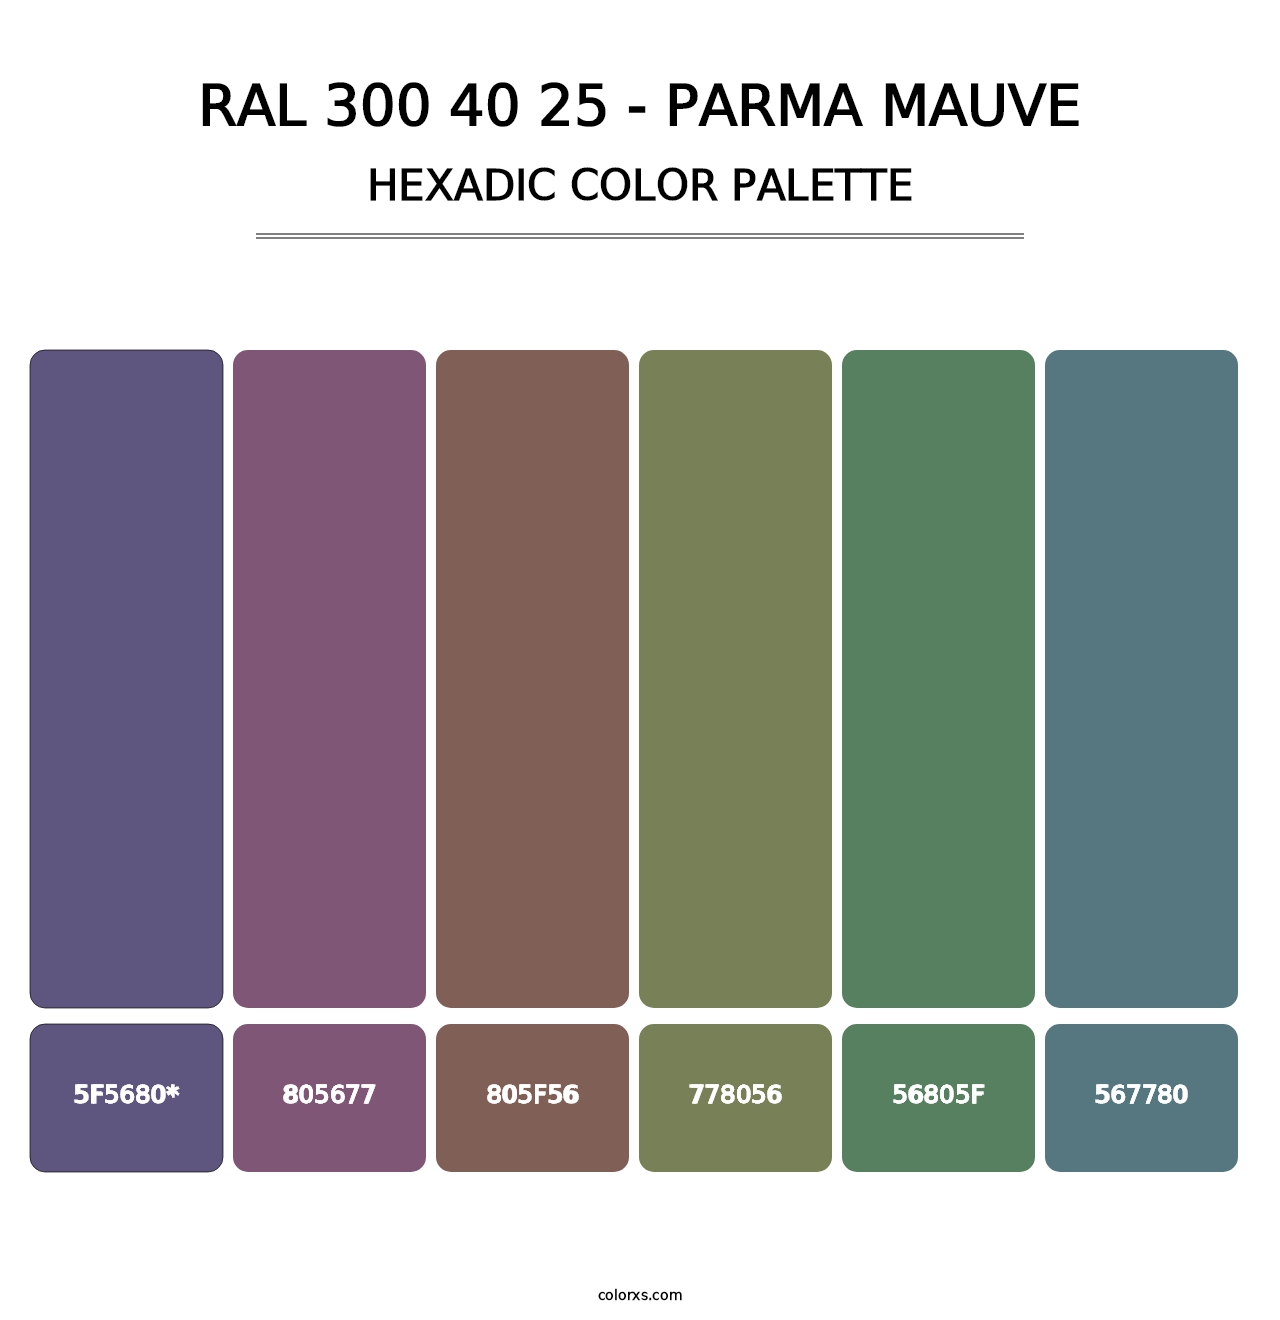 RAL 300 40 25 - Parma Mauve - Hexadic Color Palette